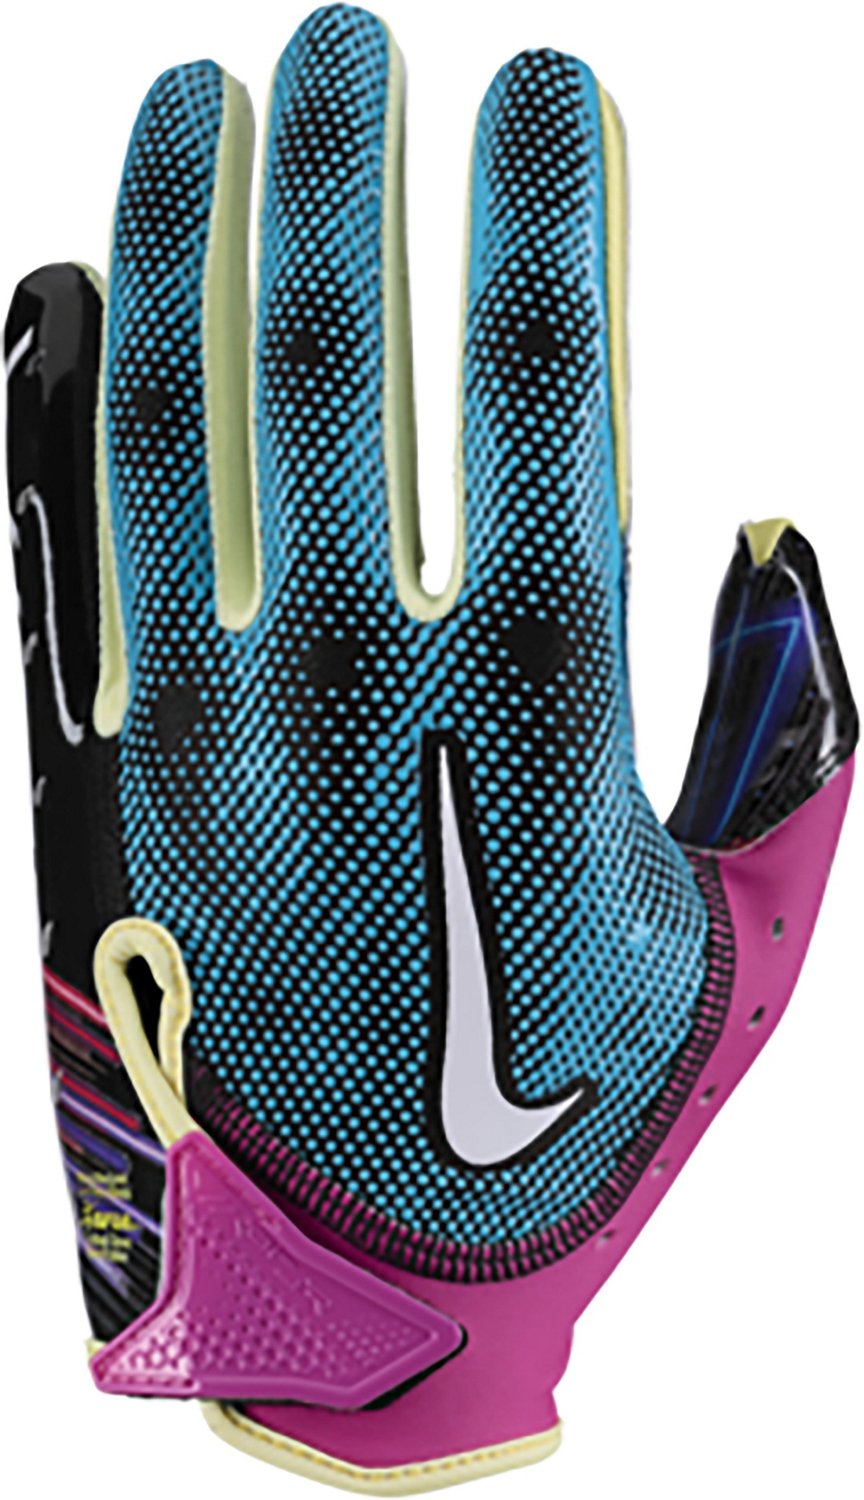 Nike Adult Vapor Jet 7.0 NFL Combine Football Gloves